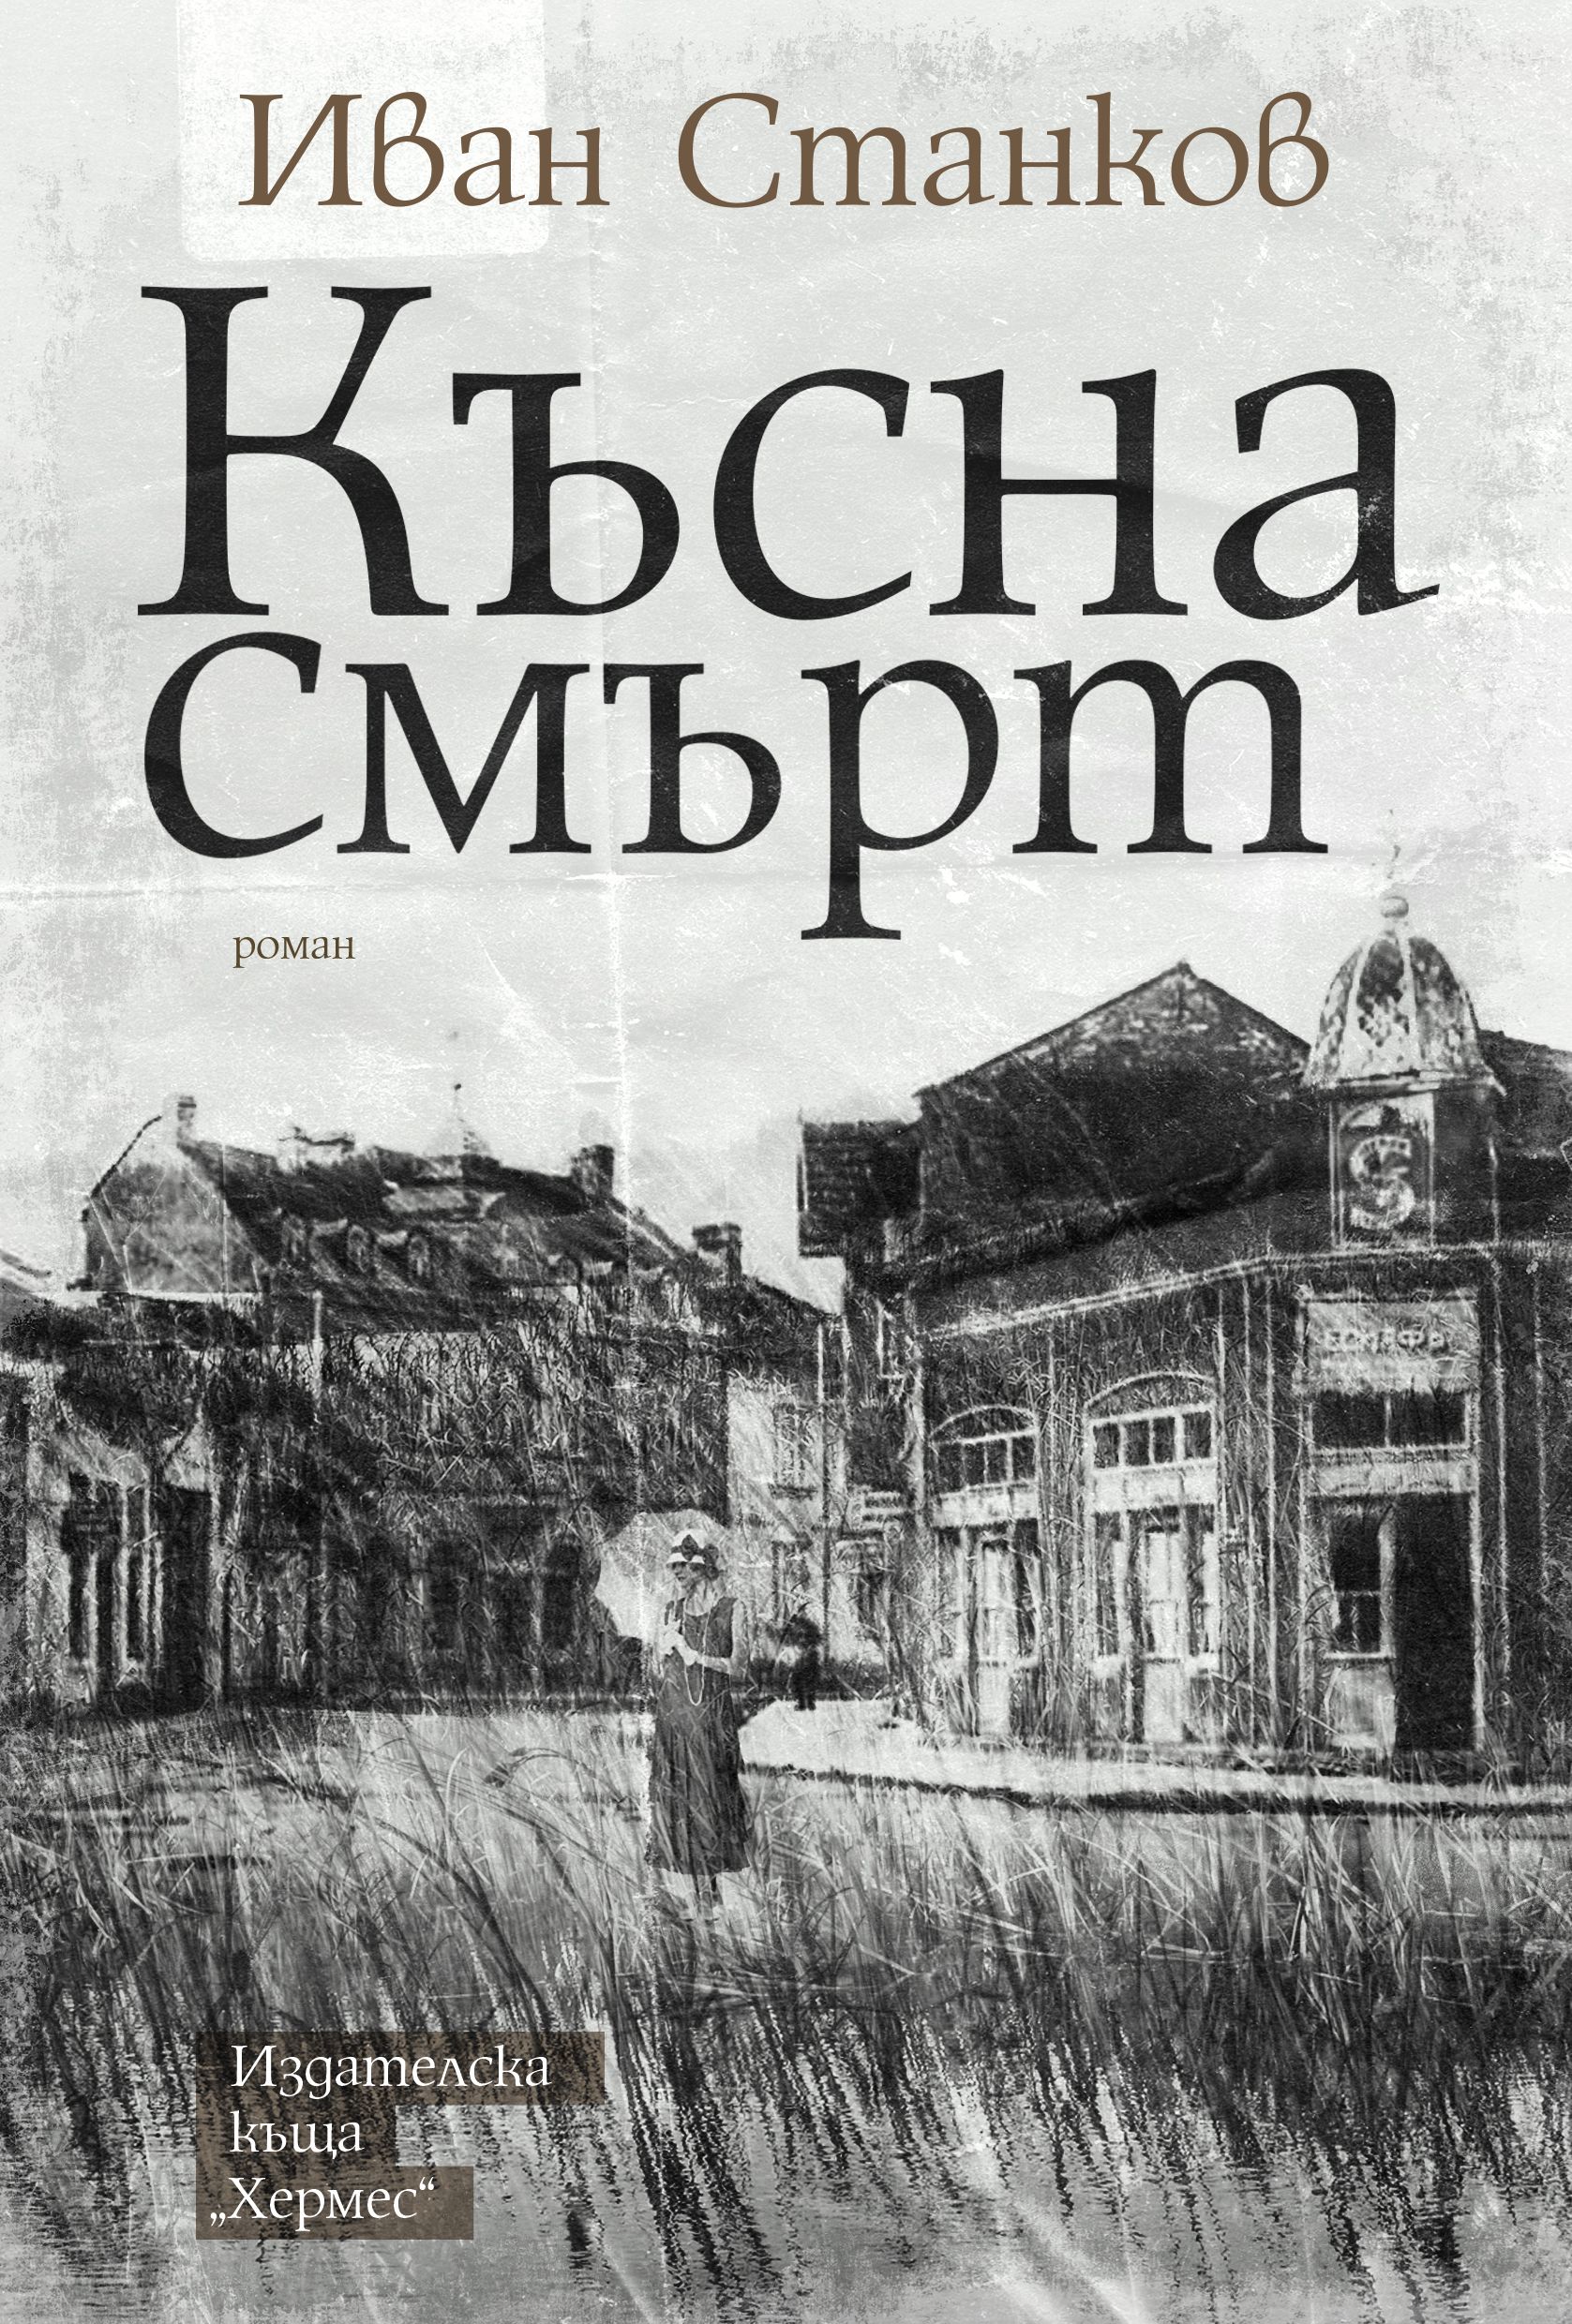 Излиза най-новата книга на Иван Станков - "Късна смърт" (прочетете ОТКЪС)